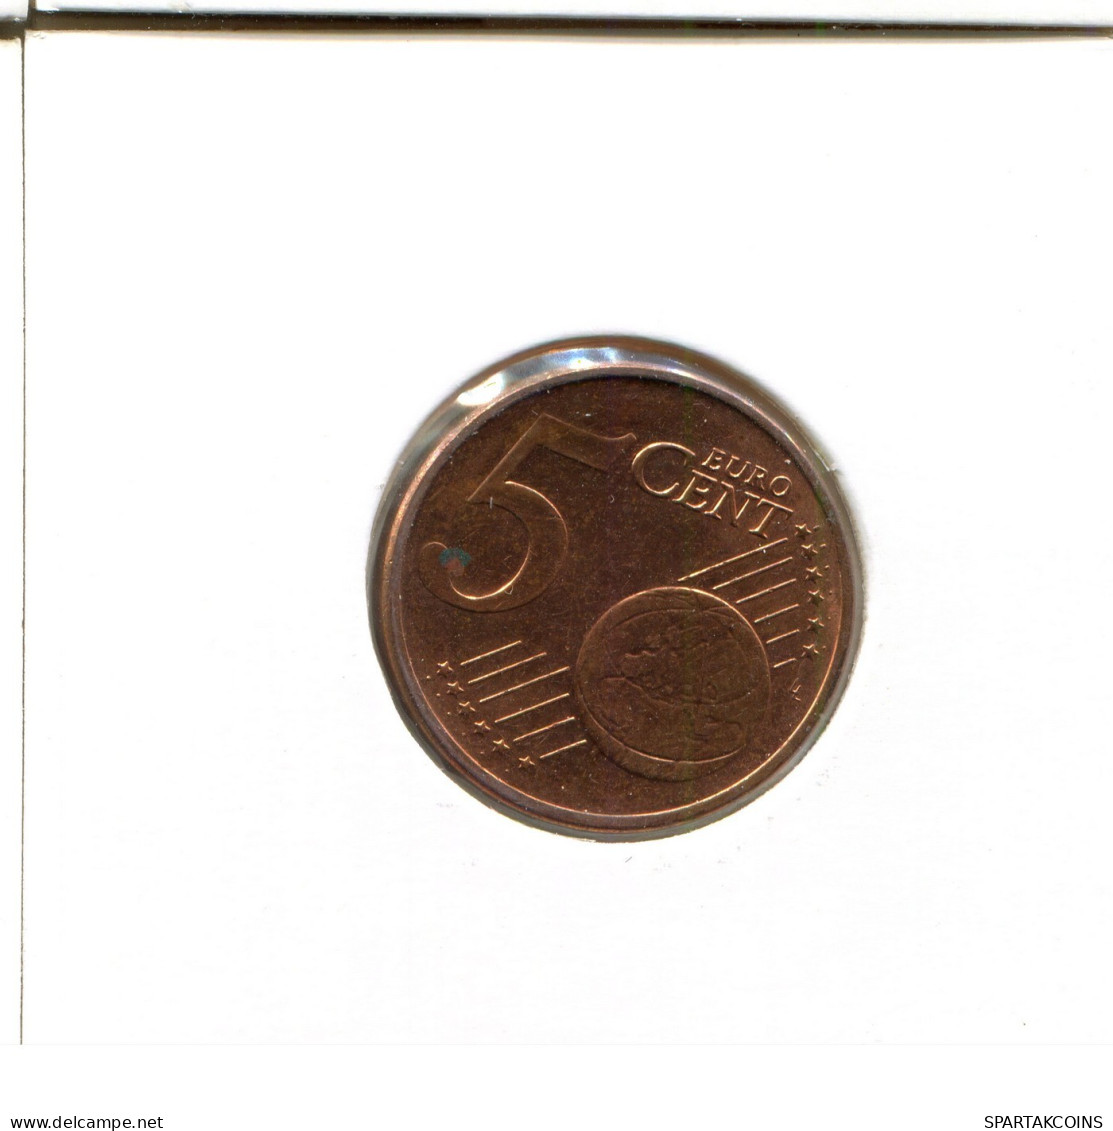 5 EURO CENTS 2010 GERMANY Coin #EU481.U.A - Germania